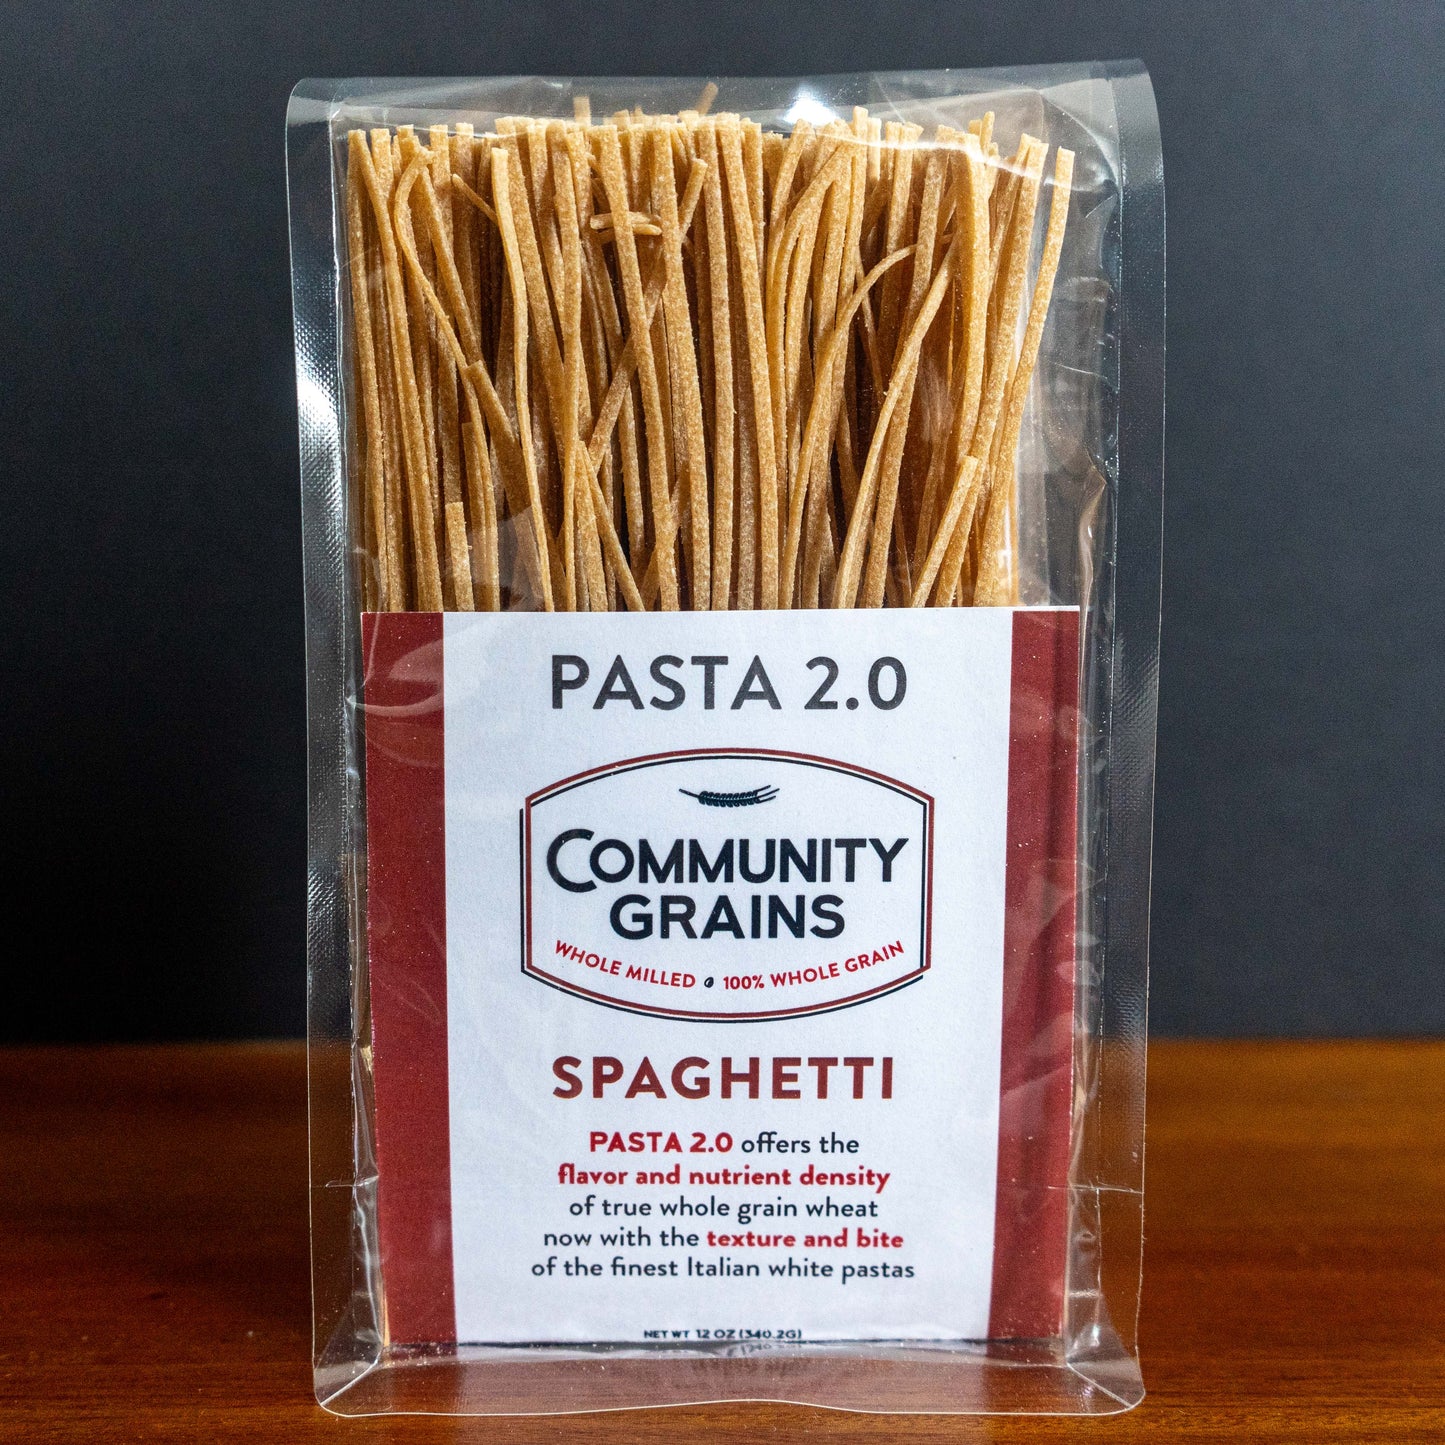 Spaghetti Pasta 2.0